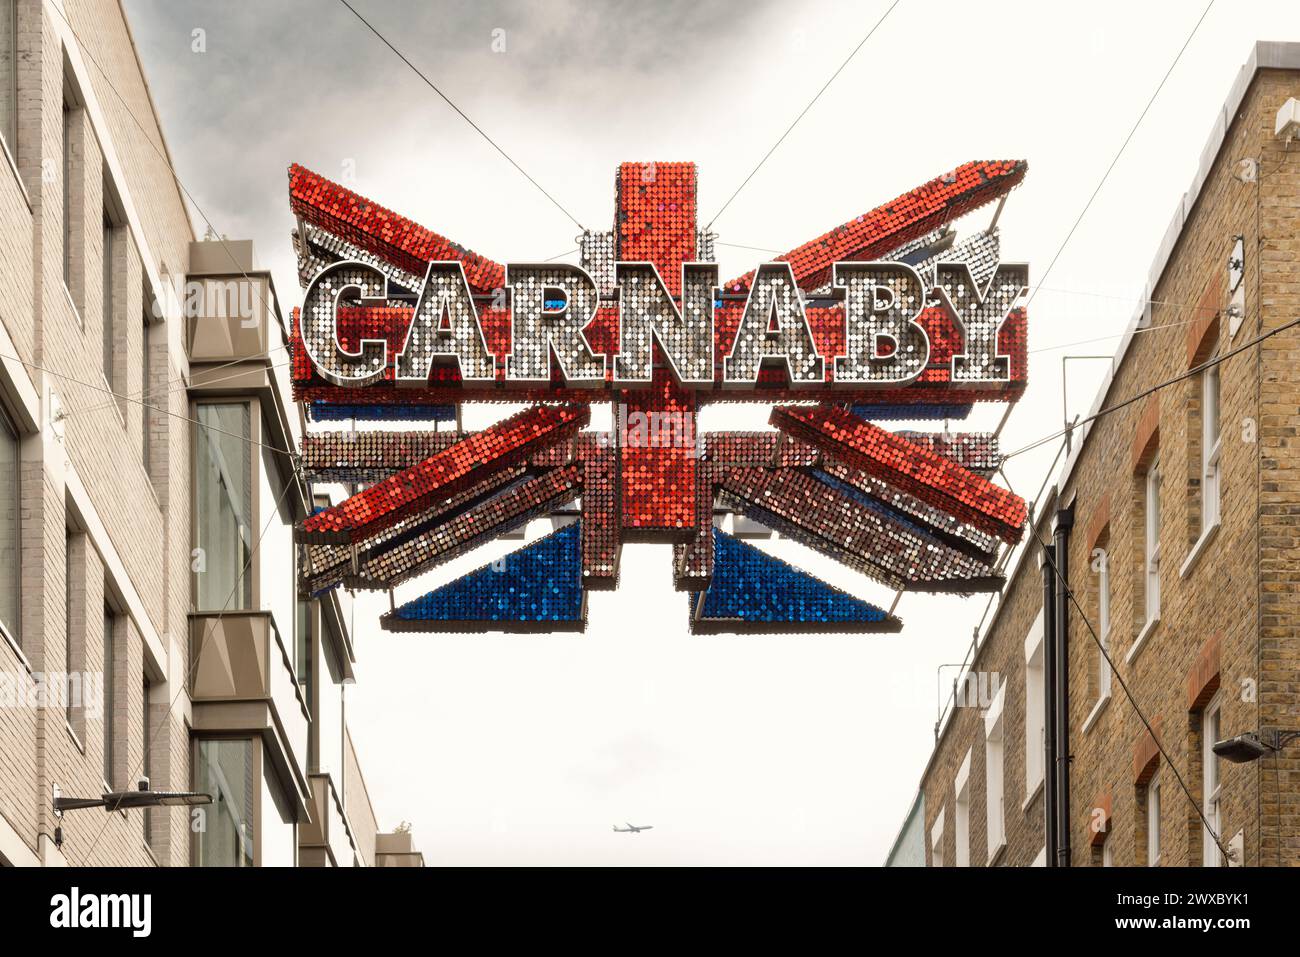 Le drapeau scintillant de l'Union au-dessus de Carnaby Street est un symbole de la culture et de la mode britanniques, ses disques miroirs reflètent l'atmosphère vibrante de la région. Banque D'Images